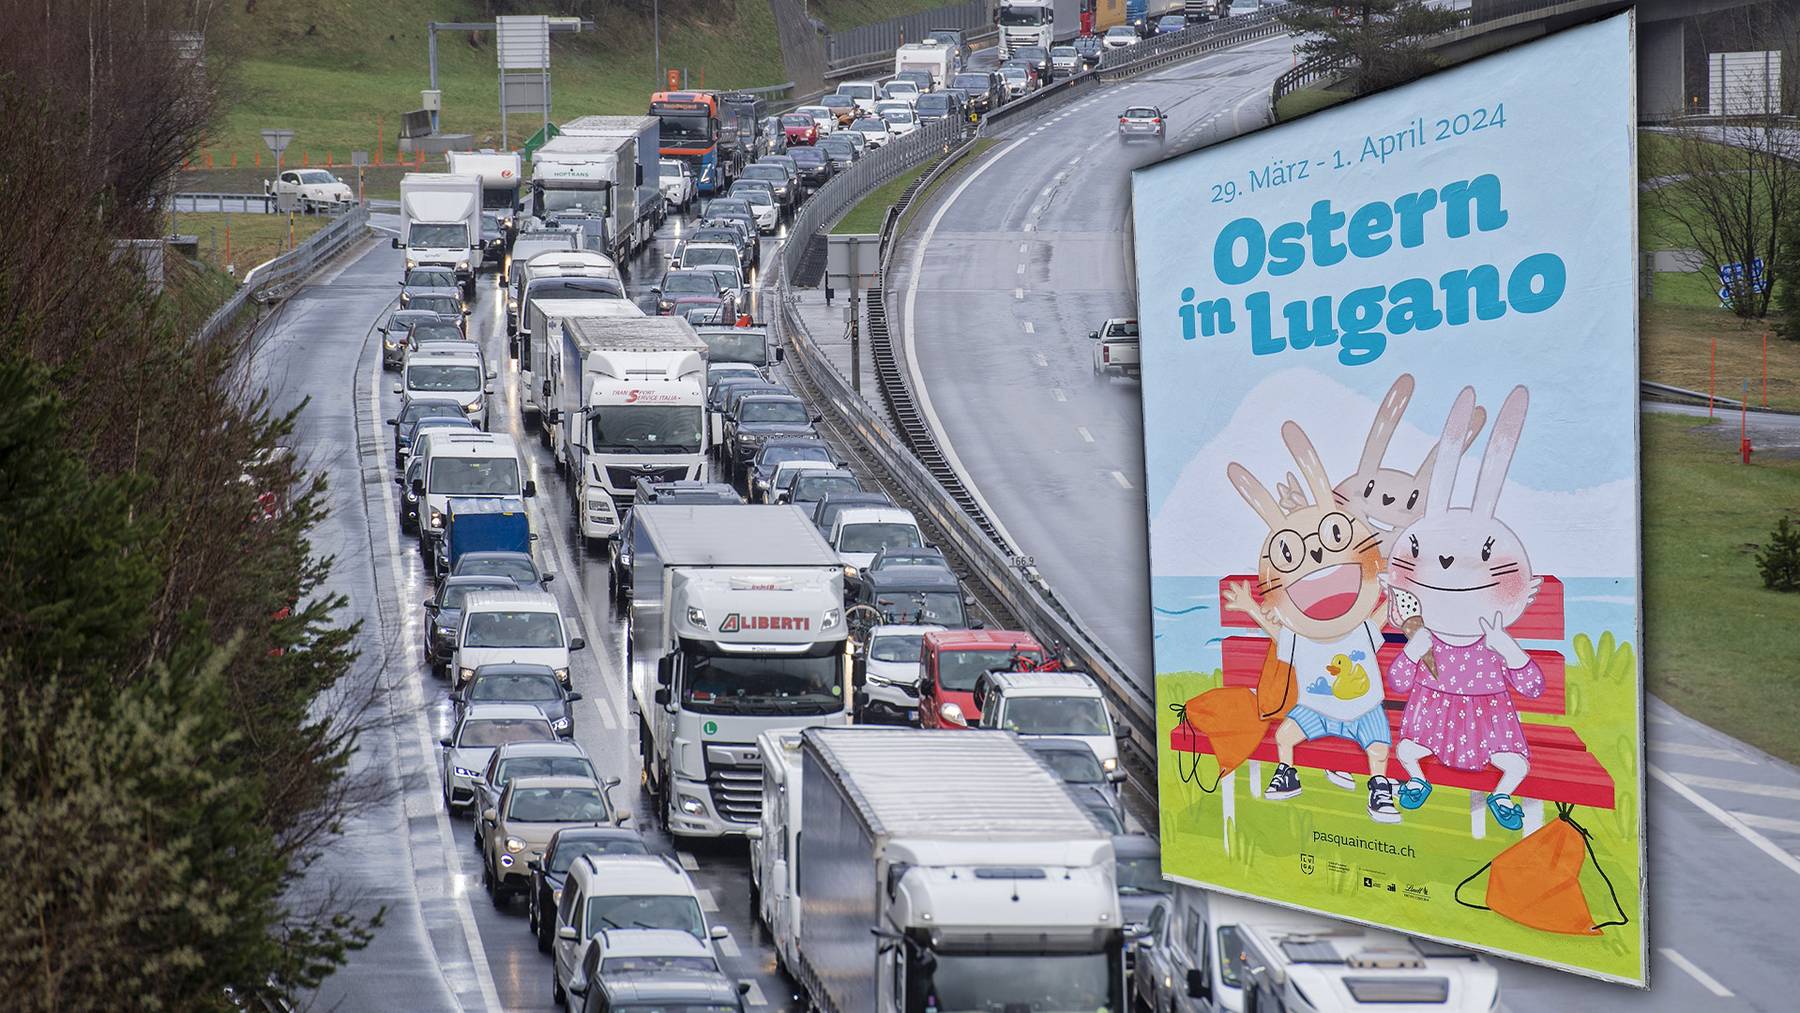 Lugano wirbt unter anderem in der Stadt Luzern für Ostern in Lugano. Führt dies zu noch mehr Stau vor dem Gotthardtunnel?